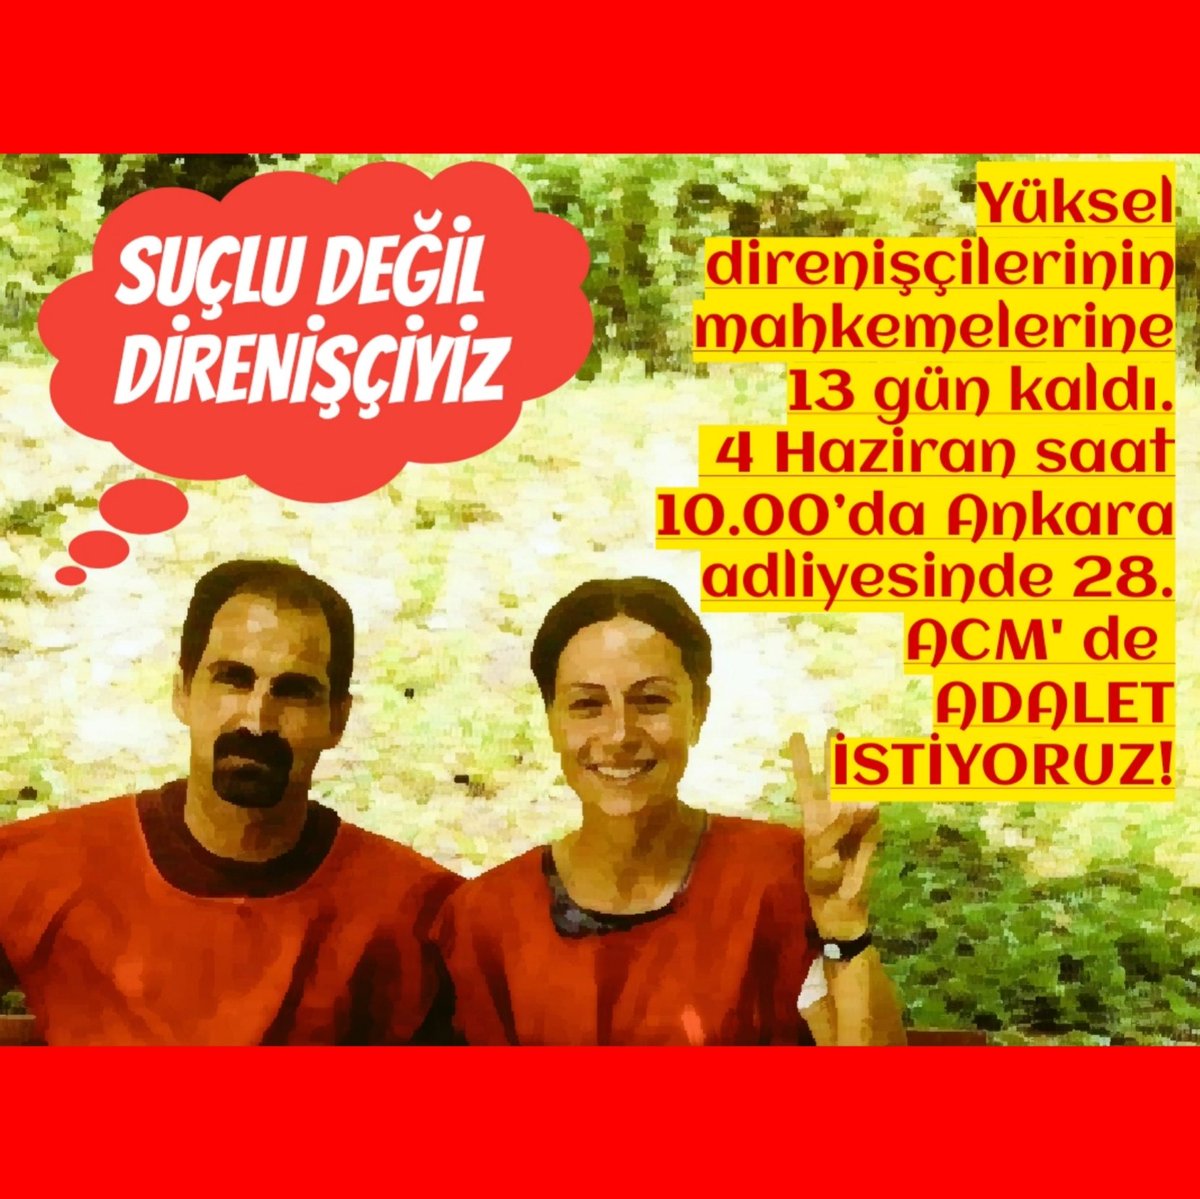 Yüksel direnişçilerinin mahkemelerine 13 gün kaldı.
 4 Haziran saat 10.00’da Ankara adliyesinde 28. ACM' de 
ADALET İSTİYORUZ!
 #SuçluDeğilDirenişçiyiz 
#YükselDirenişininSesiyiz